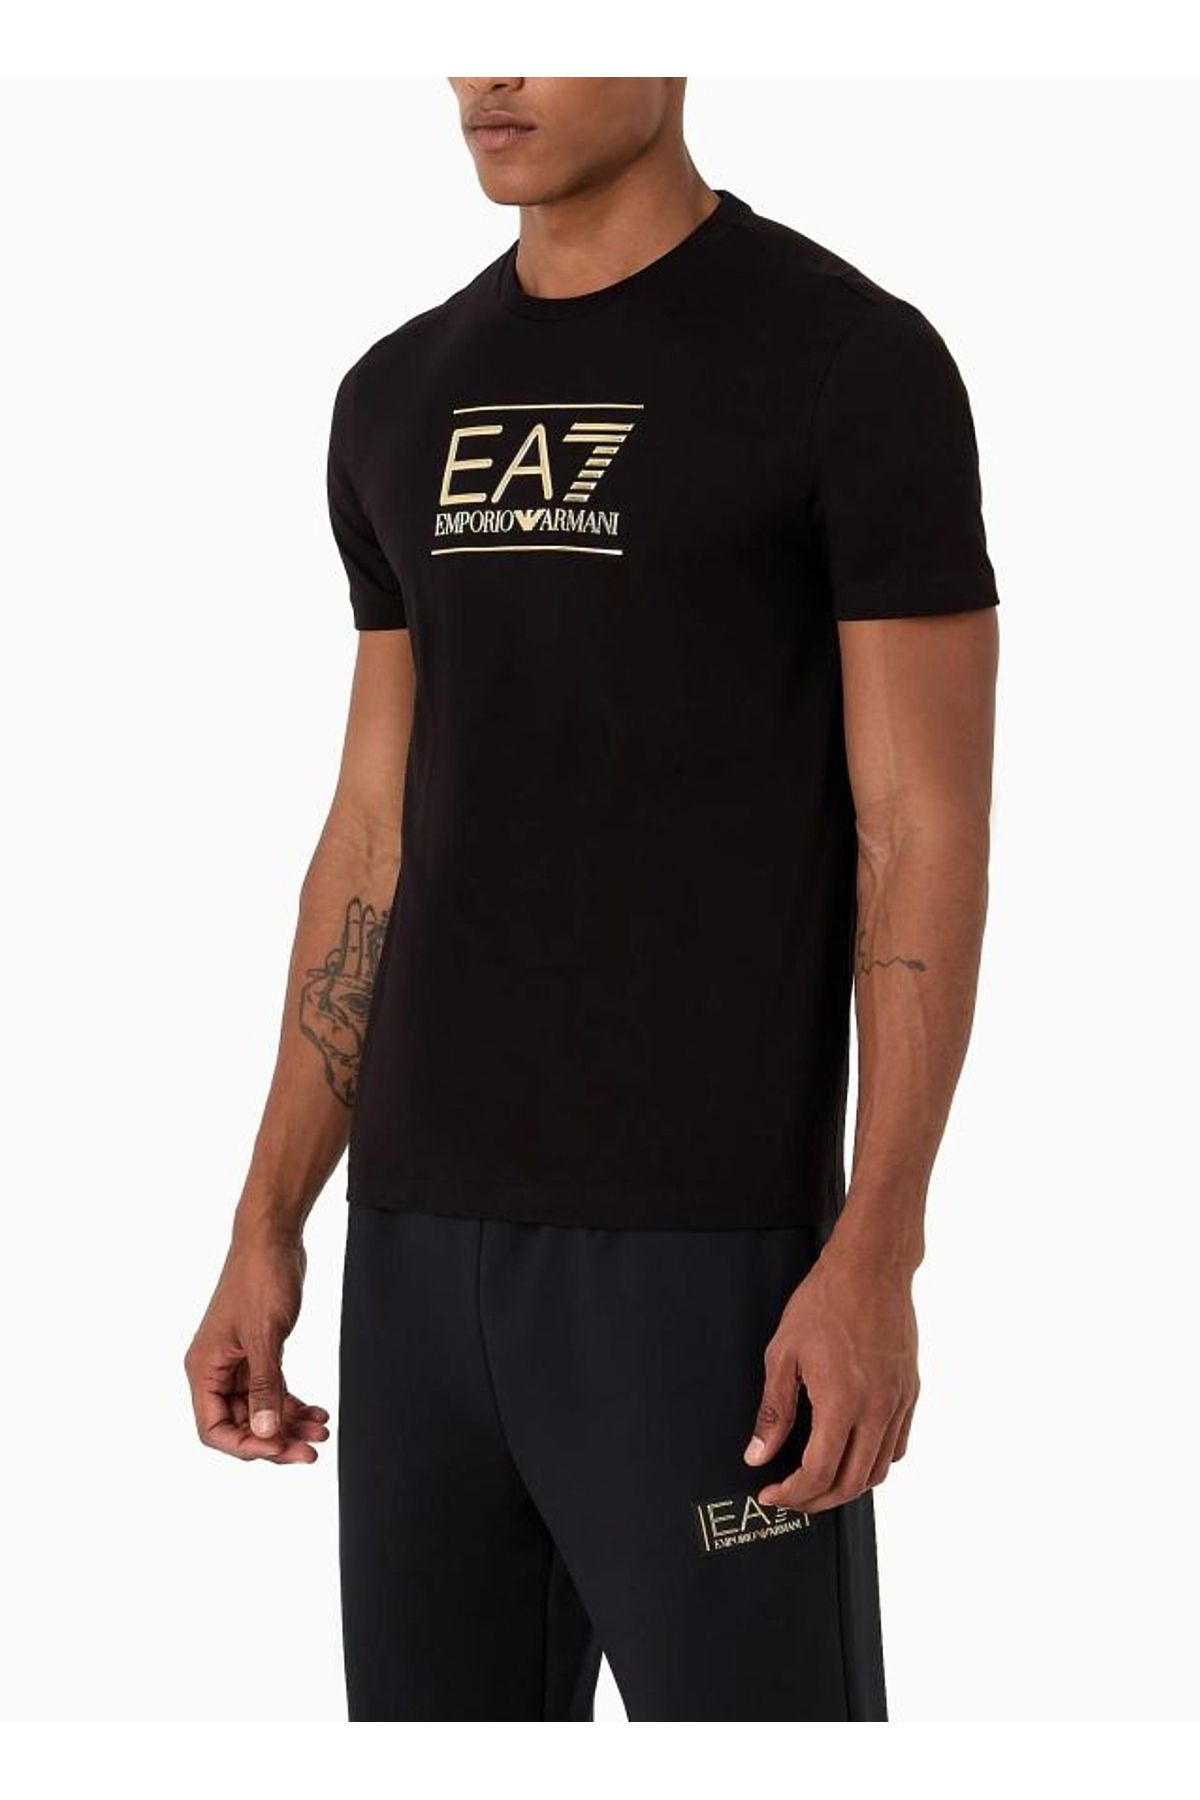 EA7 Bisiklet Yaka Siyah Erkek T-shirt 6rpt19pjm9z1200